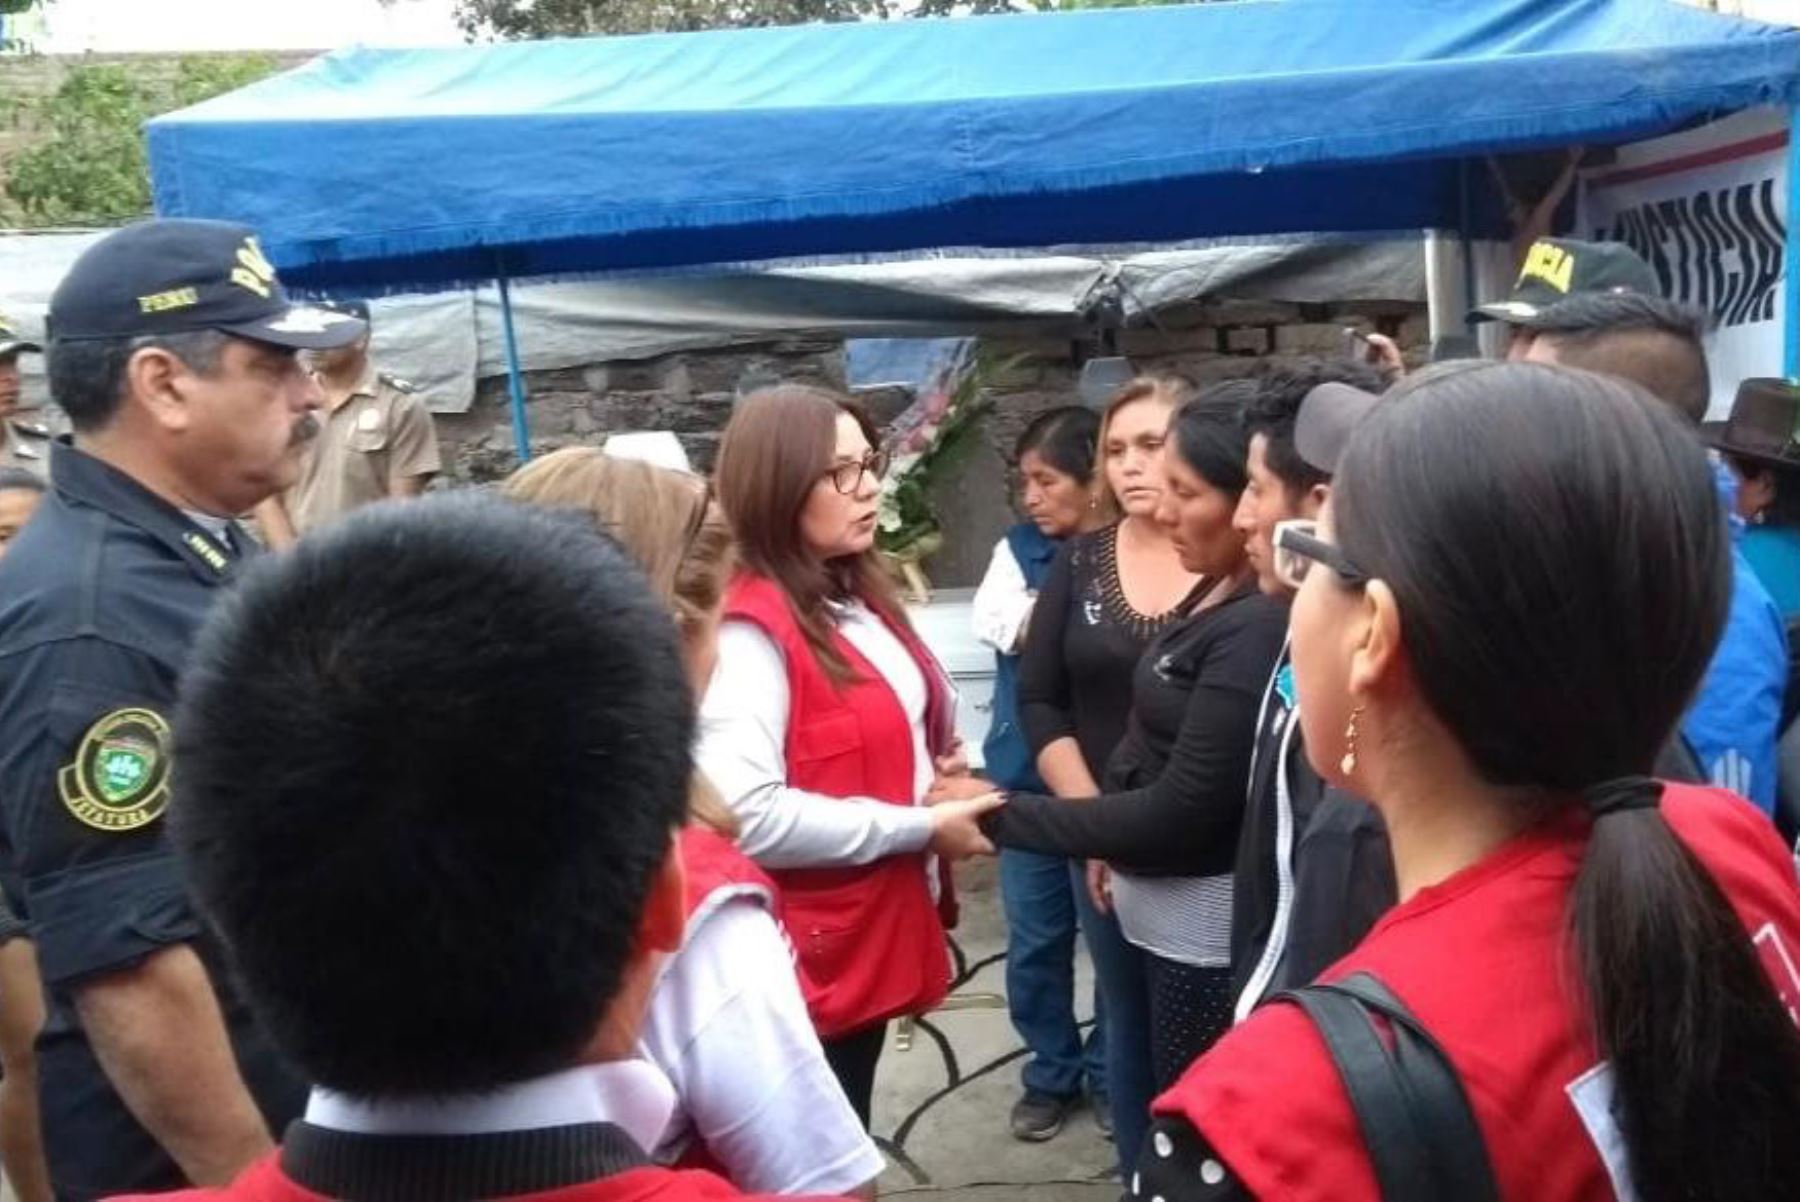 La ministra de la Mujer y Poblaciones Vulnerables, Ana María Mendieta, se reunió con familiares de niña víctima de feminicidio en Barranca.